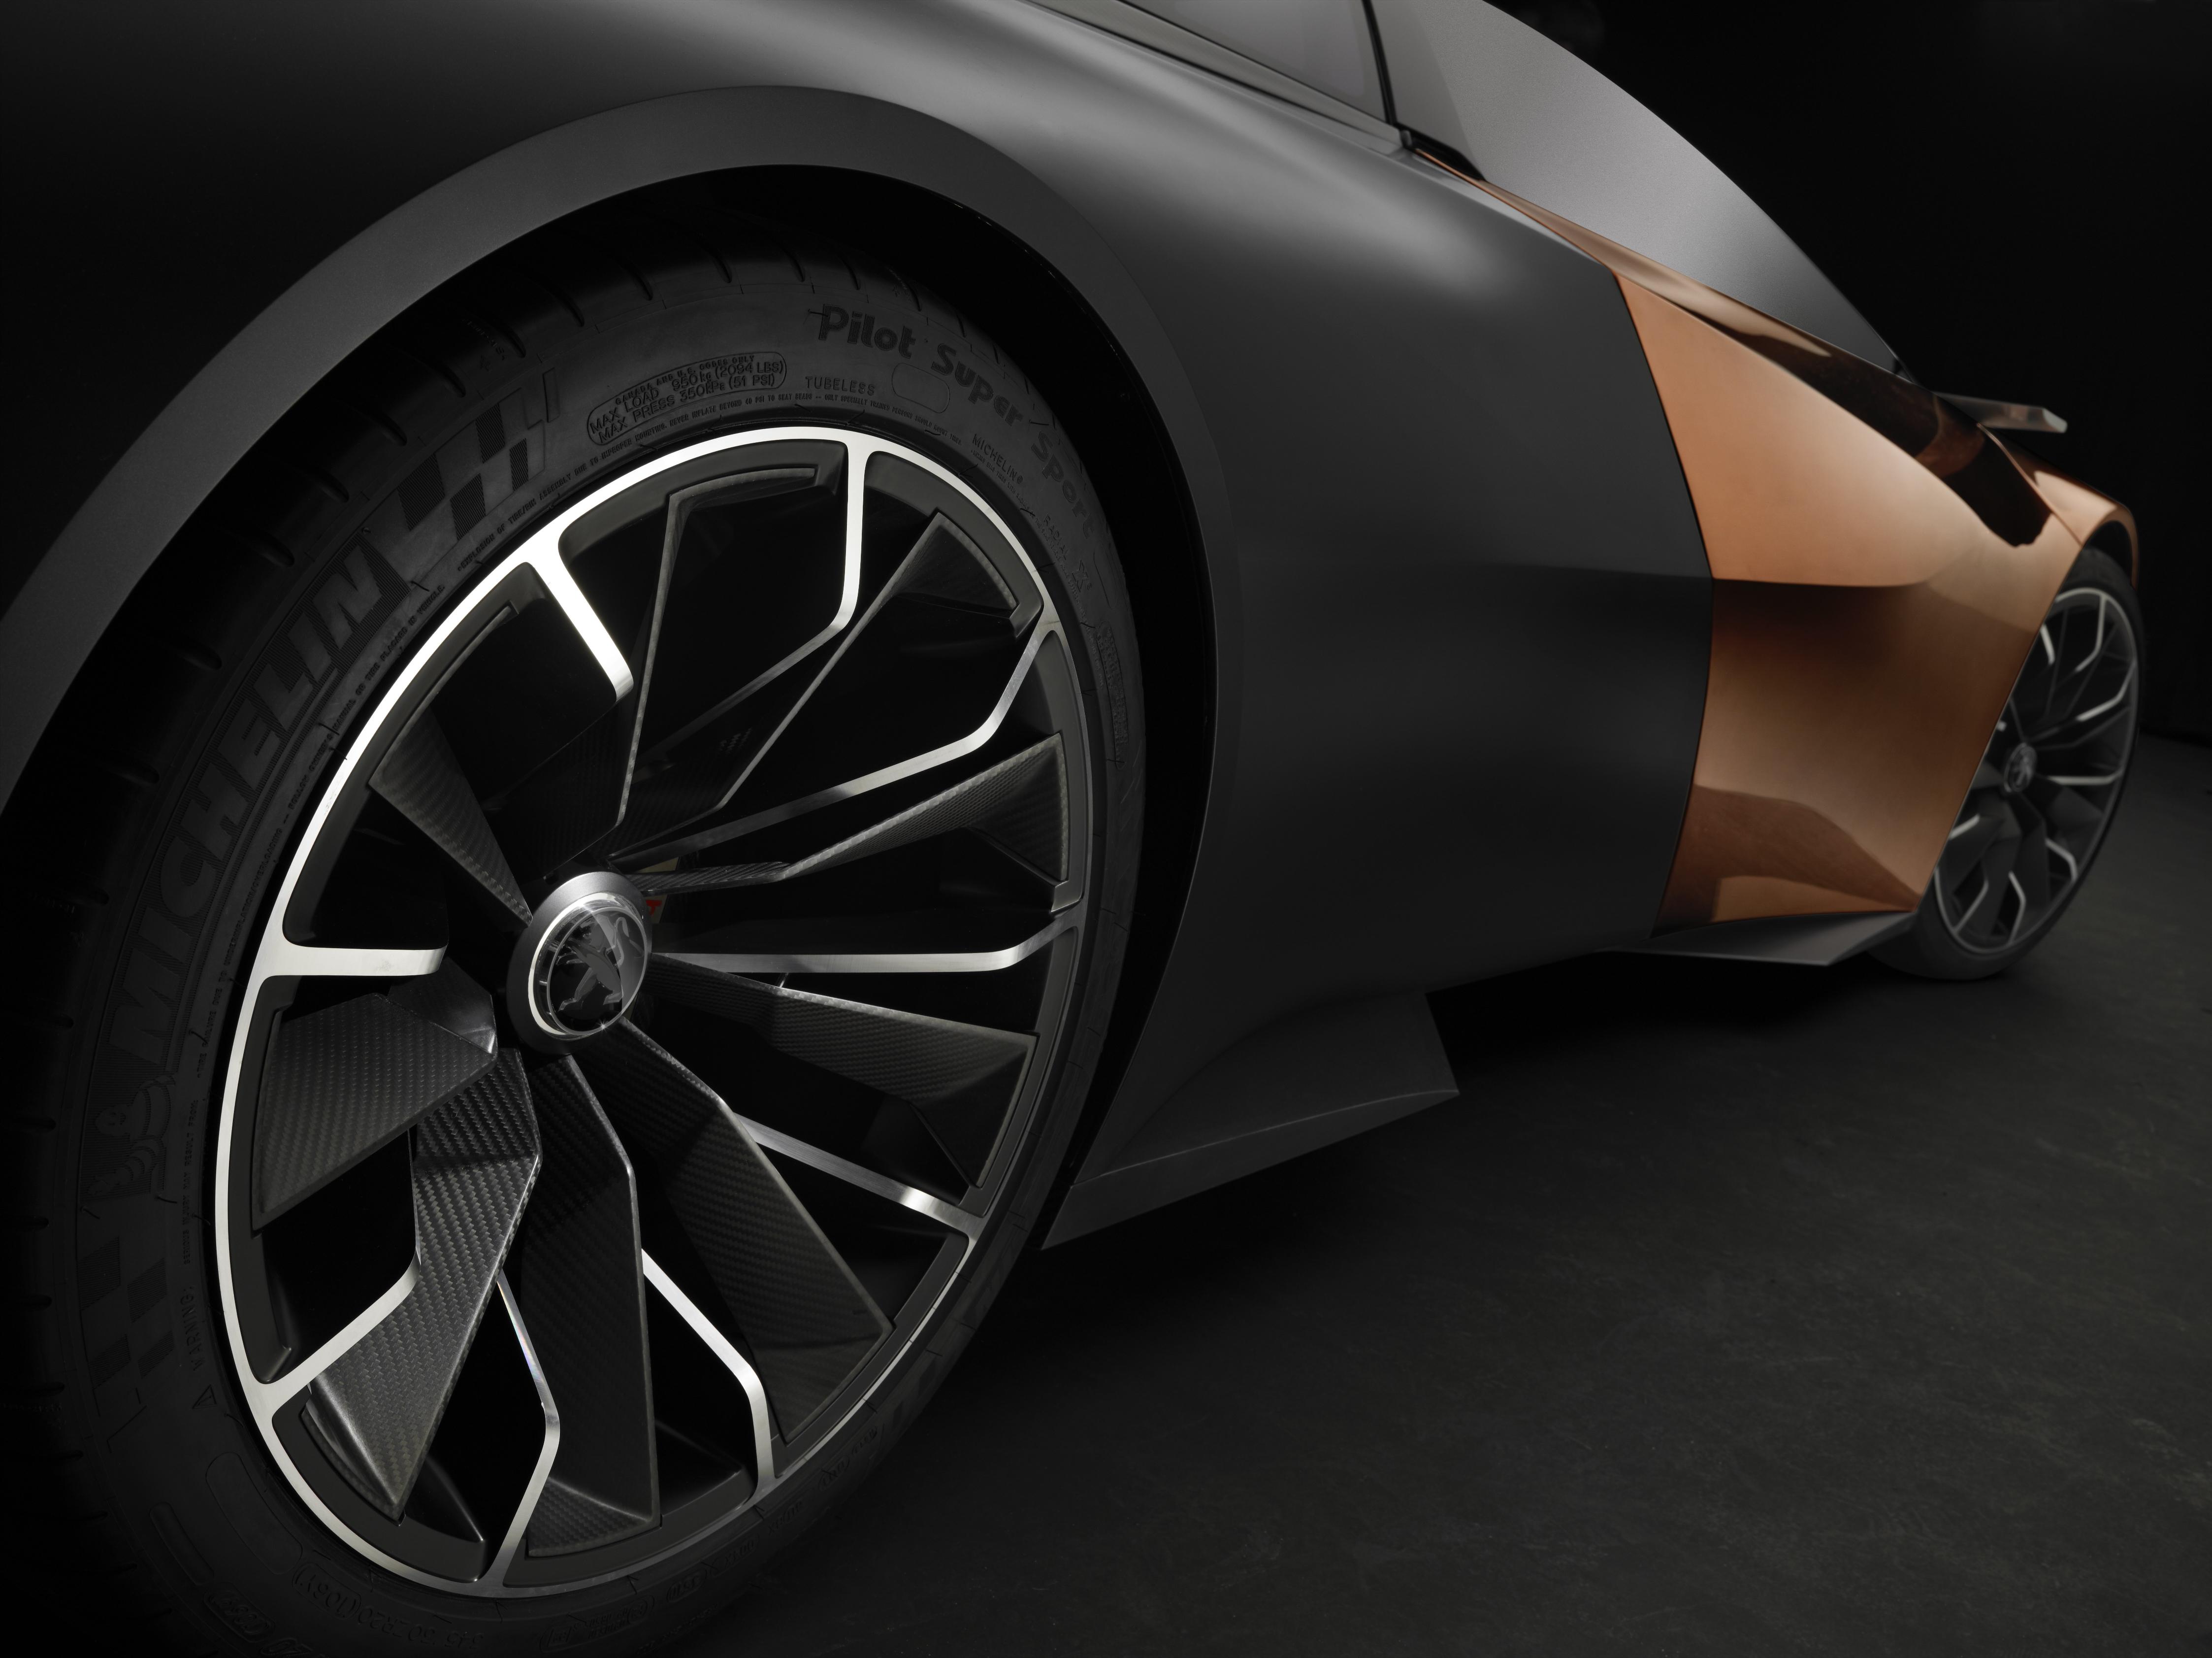 2012, Peugeot, Onyx, Concept, Supercars, Supercar Wallpaper